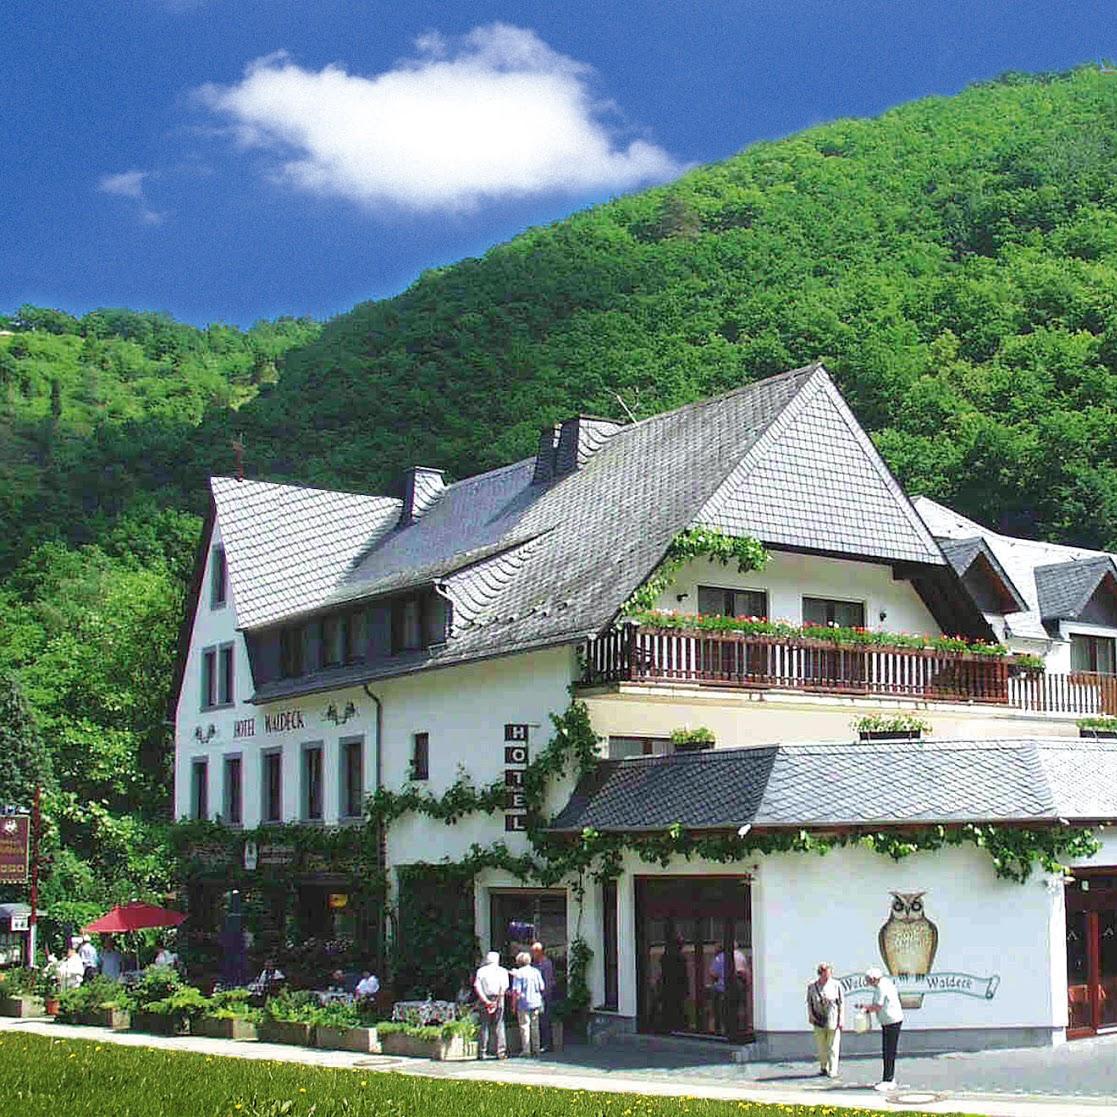 Restaurant "Mosellandhotel Waldeck" in Burgen